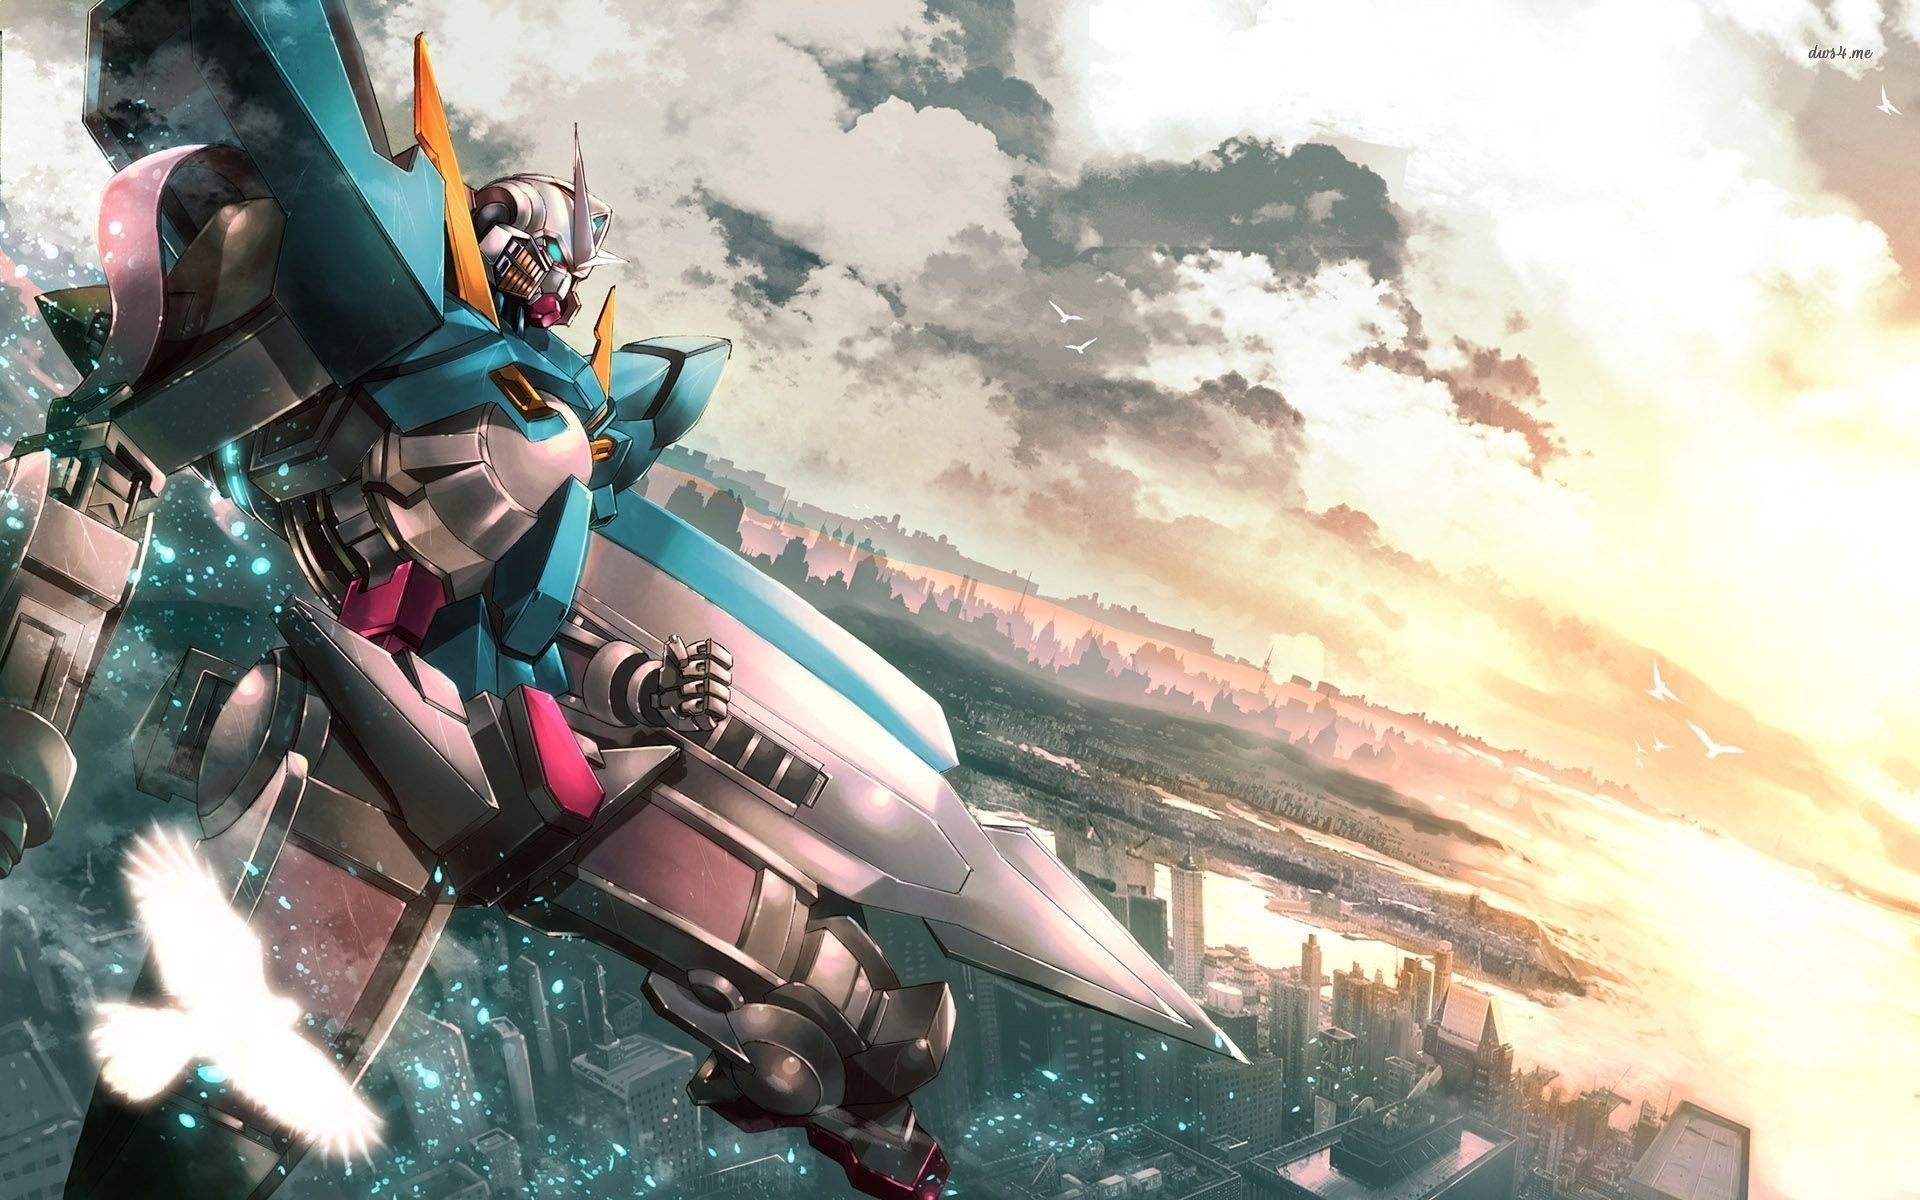 Gundam wallpaper ·① Download free beautiful wallpapers for desktop